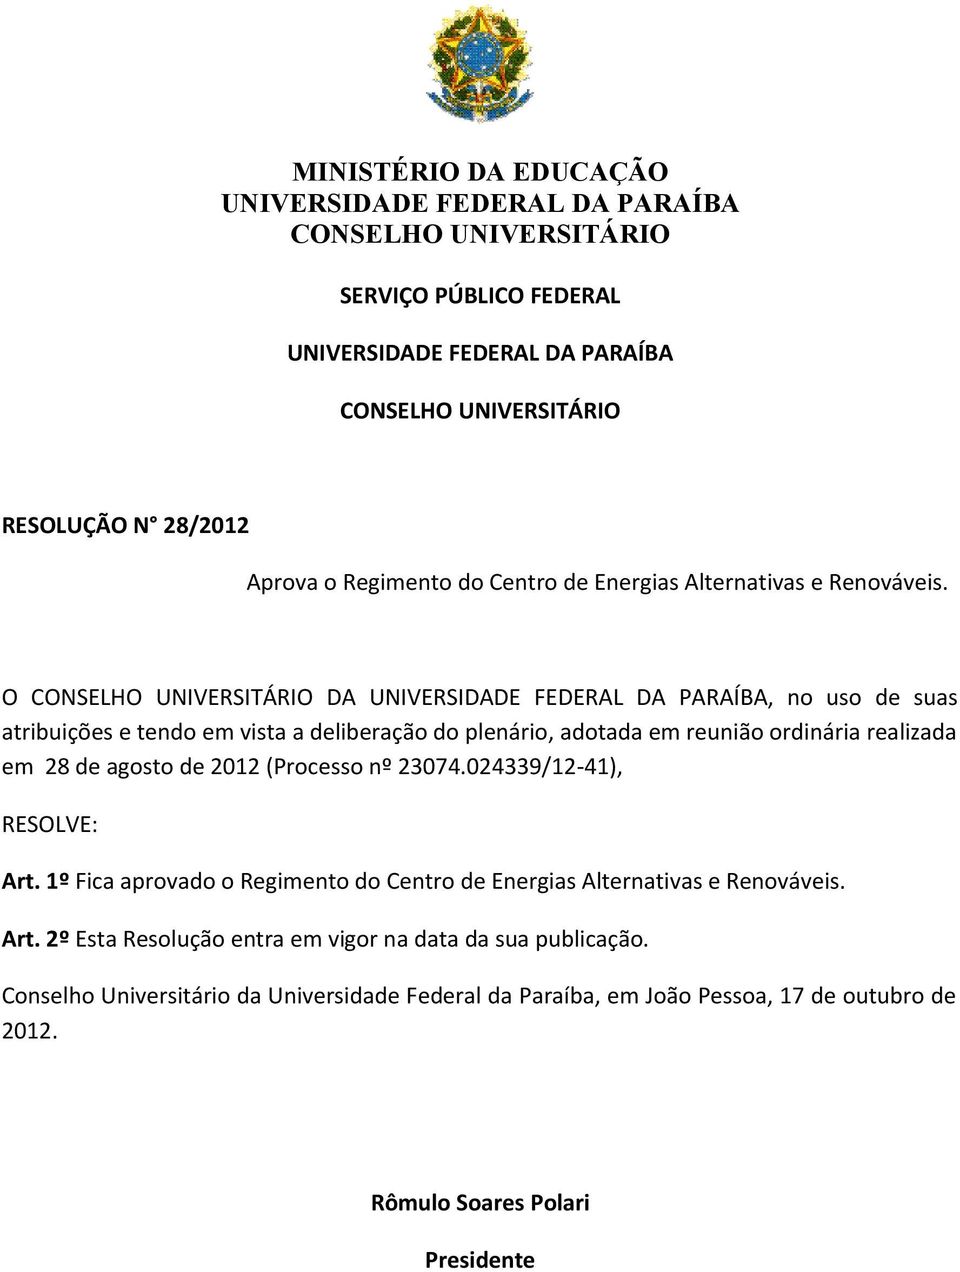 O CONSELHO UNIVERSITÁRIO DA UNIVERSIDADE FEDERAL DA PARAÍBA, no uso de suas atribuições e tendo em vista a deliberação do plenário, adotada em reunião ordinária realizada em 28 de agosto de